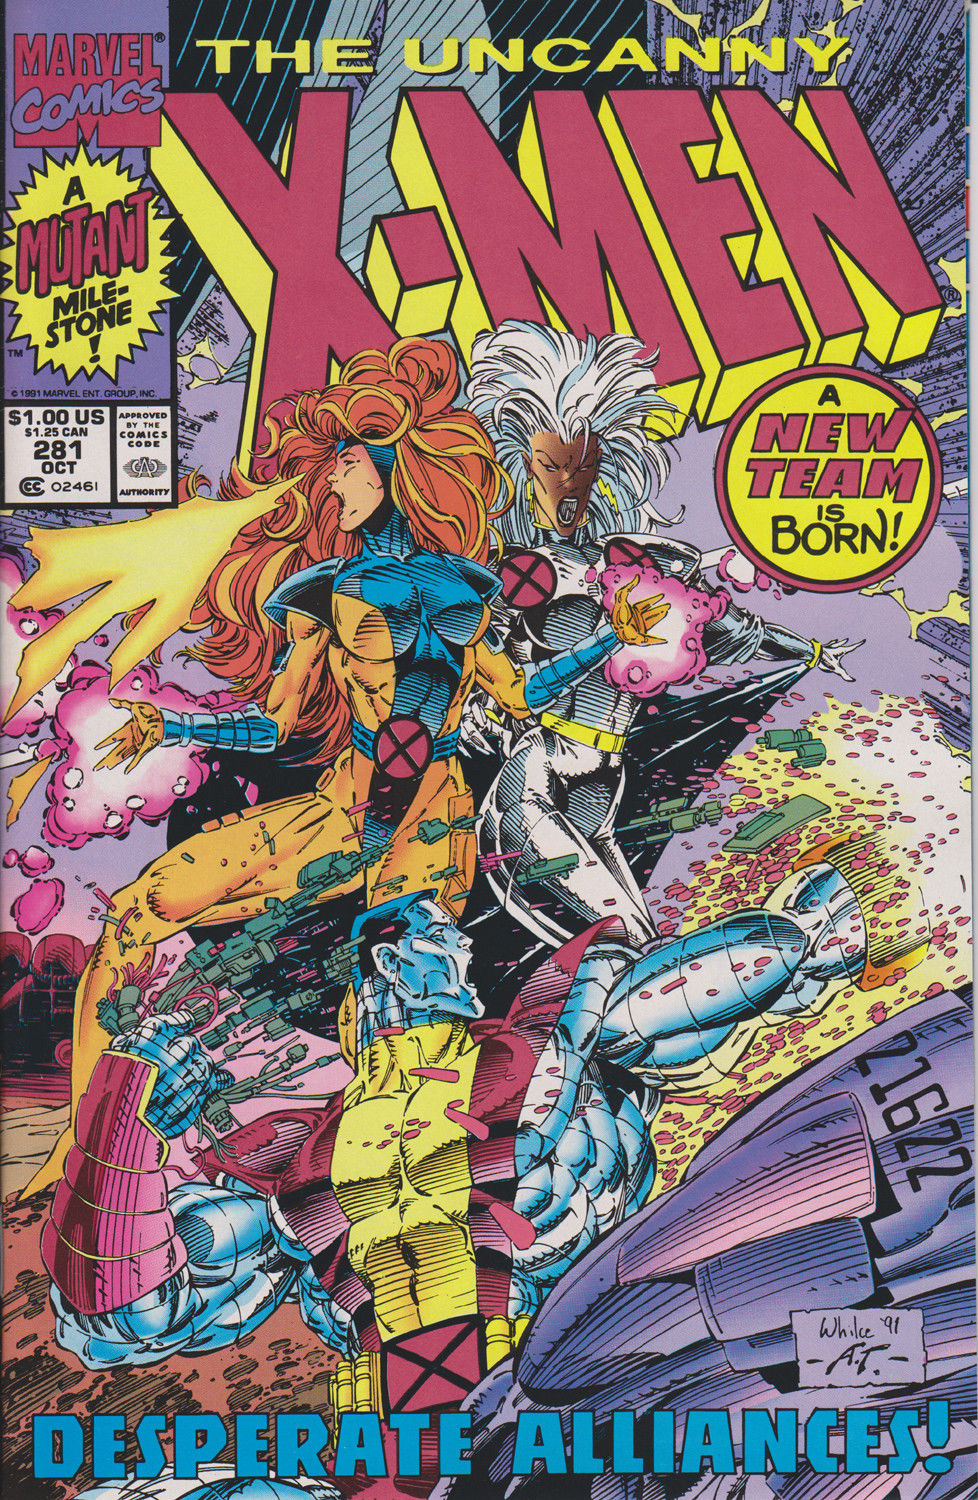 UNCANNY X-MEN #281 (2ND PRINT) COMIC BOOK ~ Whilce Portacio Art ~ Marvel Comics